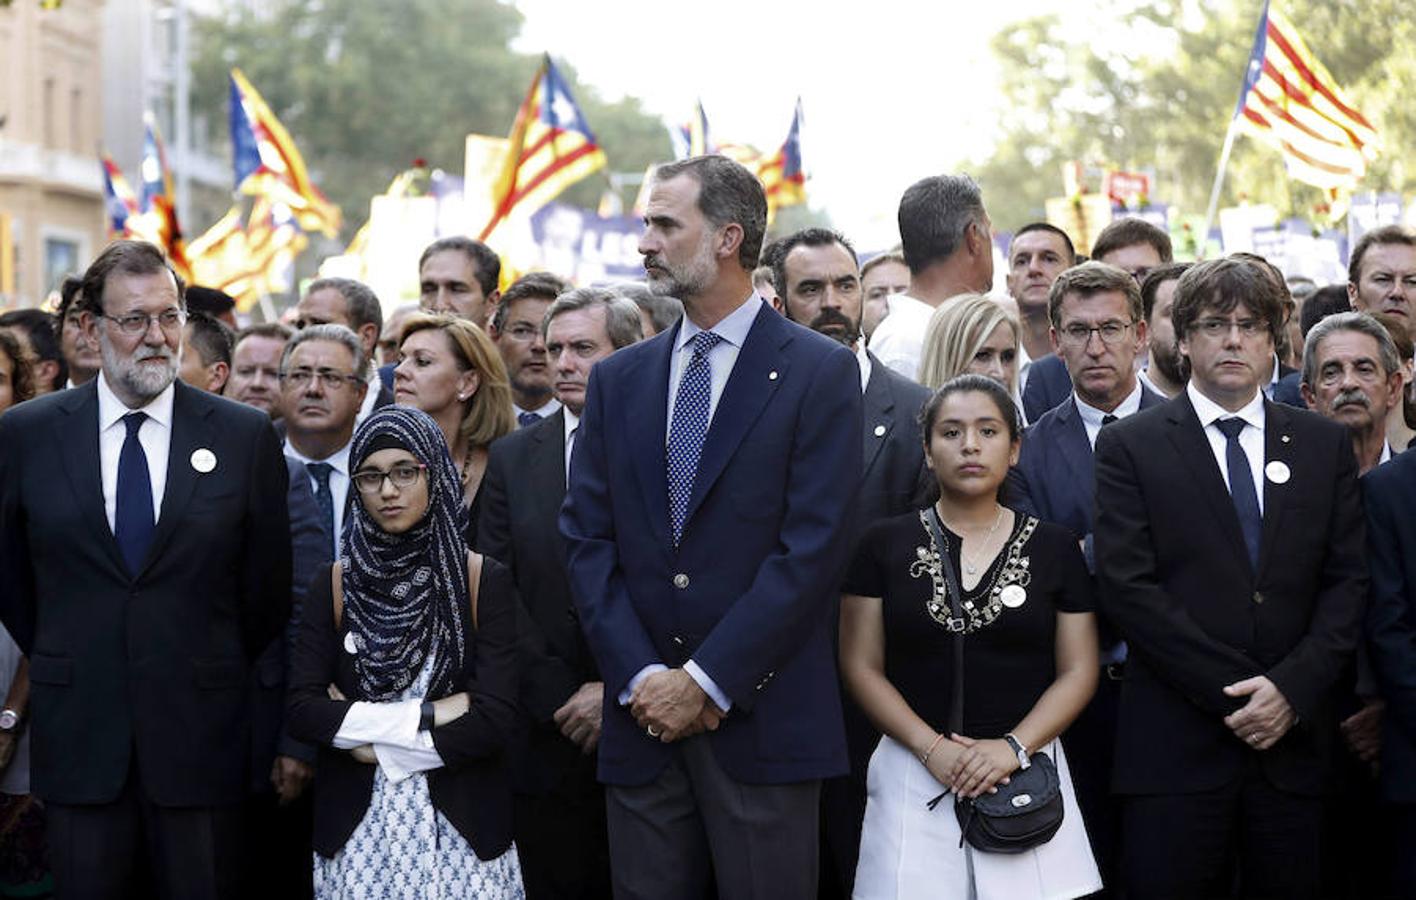 26 de agosto de 2017. Felipe VI, junto a los presidentes del Gobierno, Mariano Rajoy (i), y de la Generalitat, Carles Puigdemont (d), durante la manifestación contra los atentados yihadistas en Cataluña que bajo el lema "No tinc por" (No tengo miedo) recorrió las calles de Barcelona.